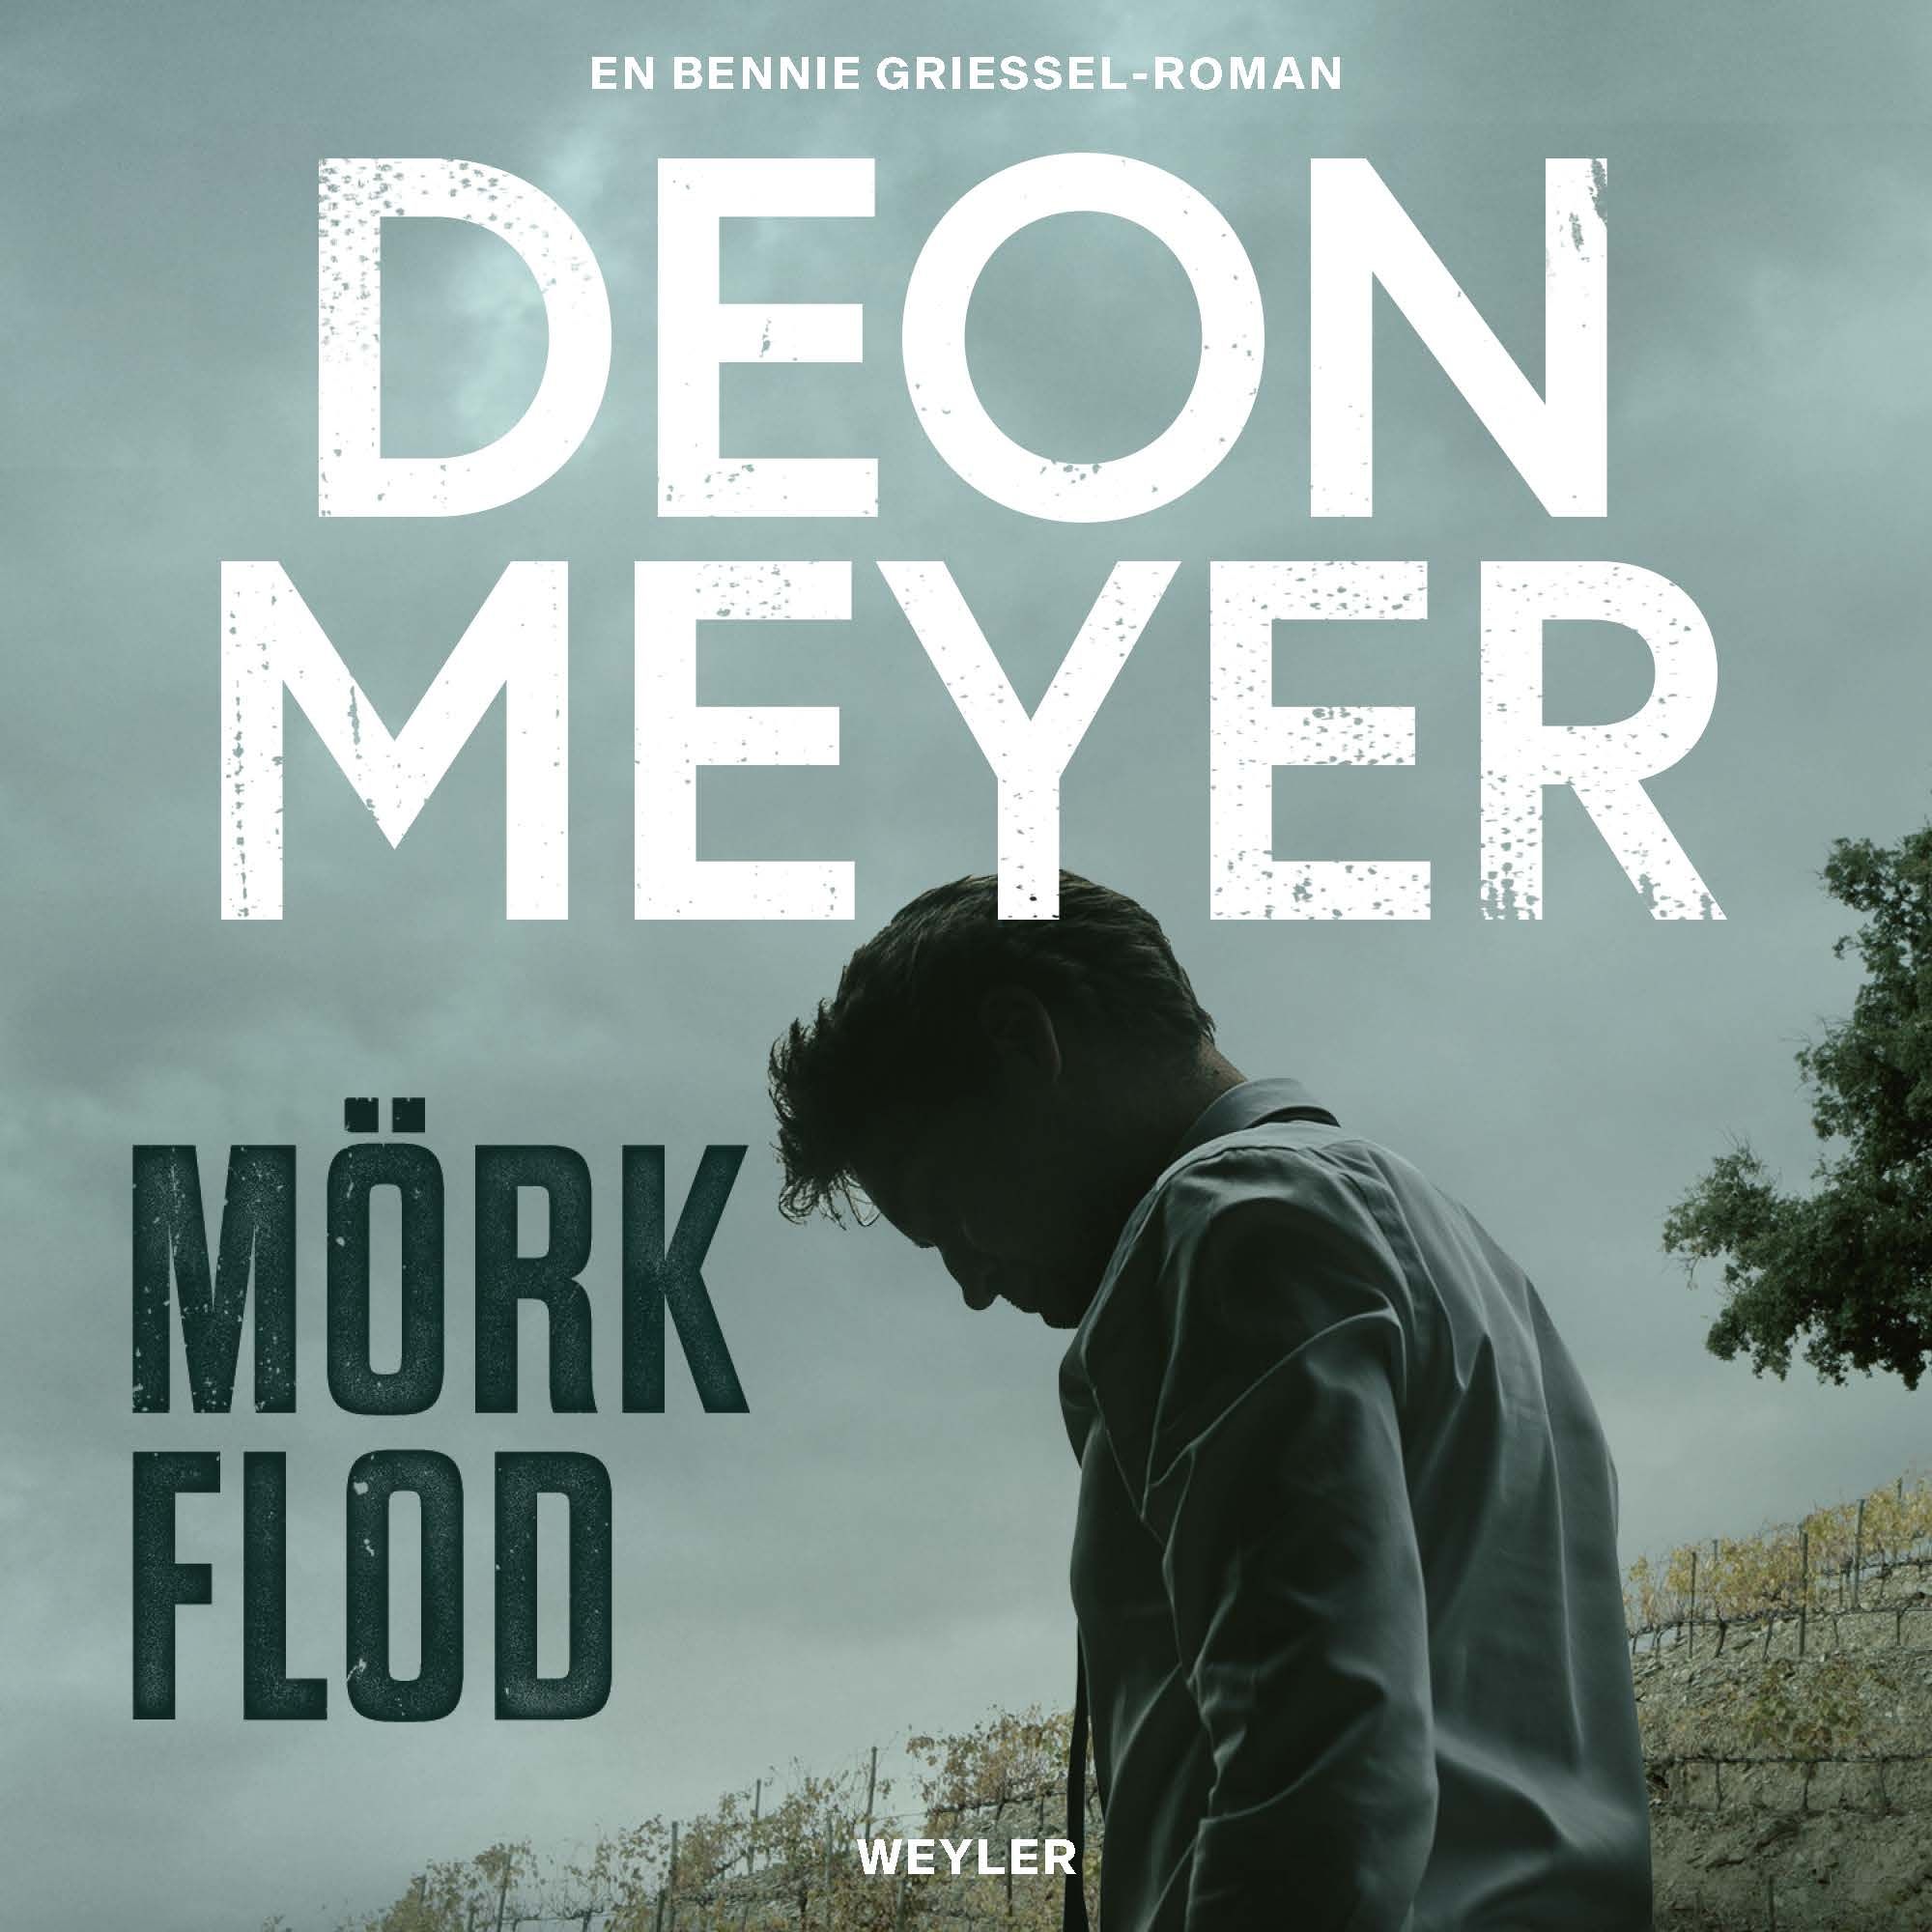 Mörk flod, audiobook by Deon Meyer